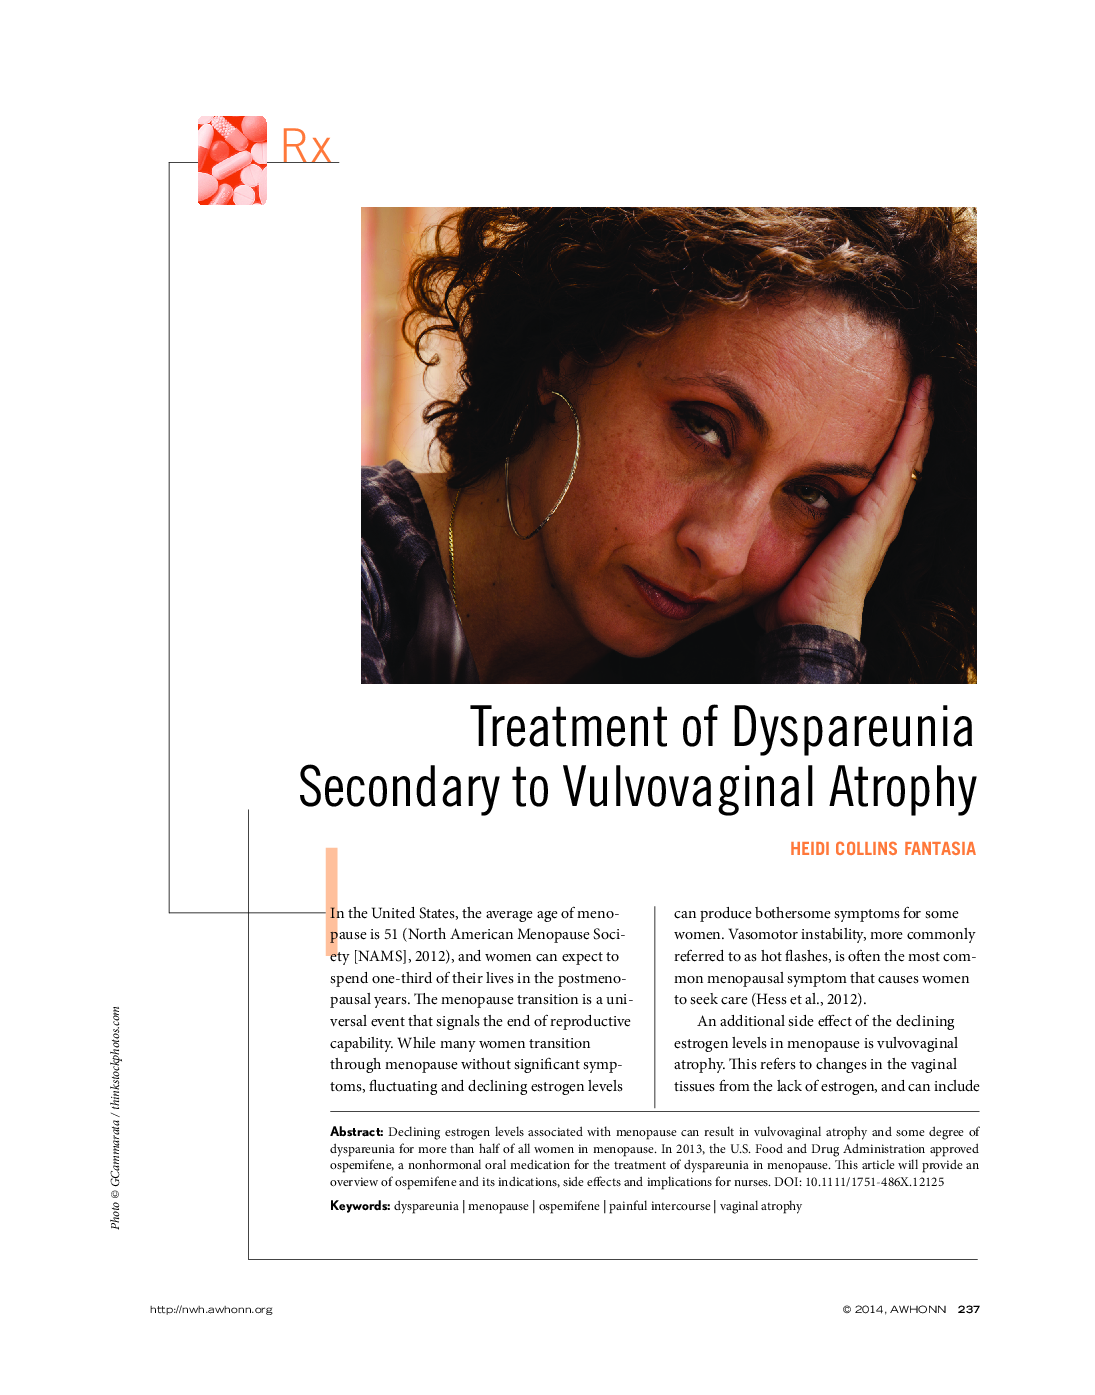 درمان دیسپروونیایی ثانویه به آتروفی وولوواژینال 